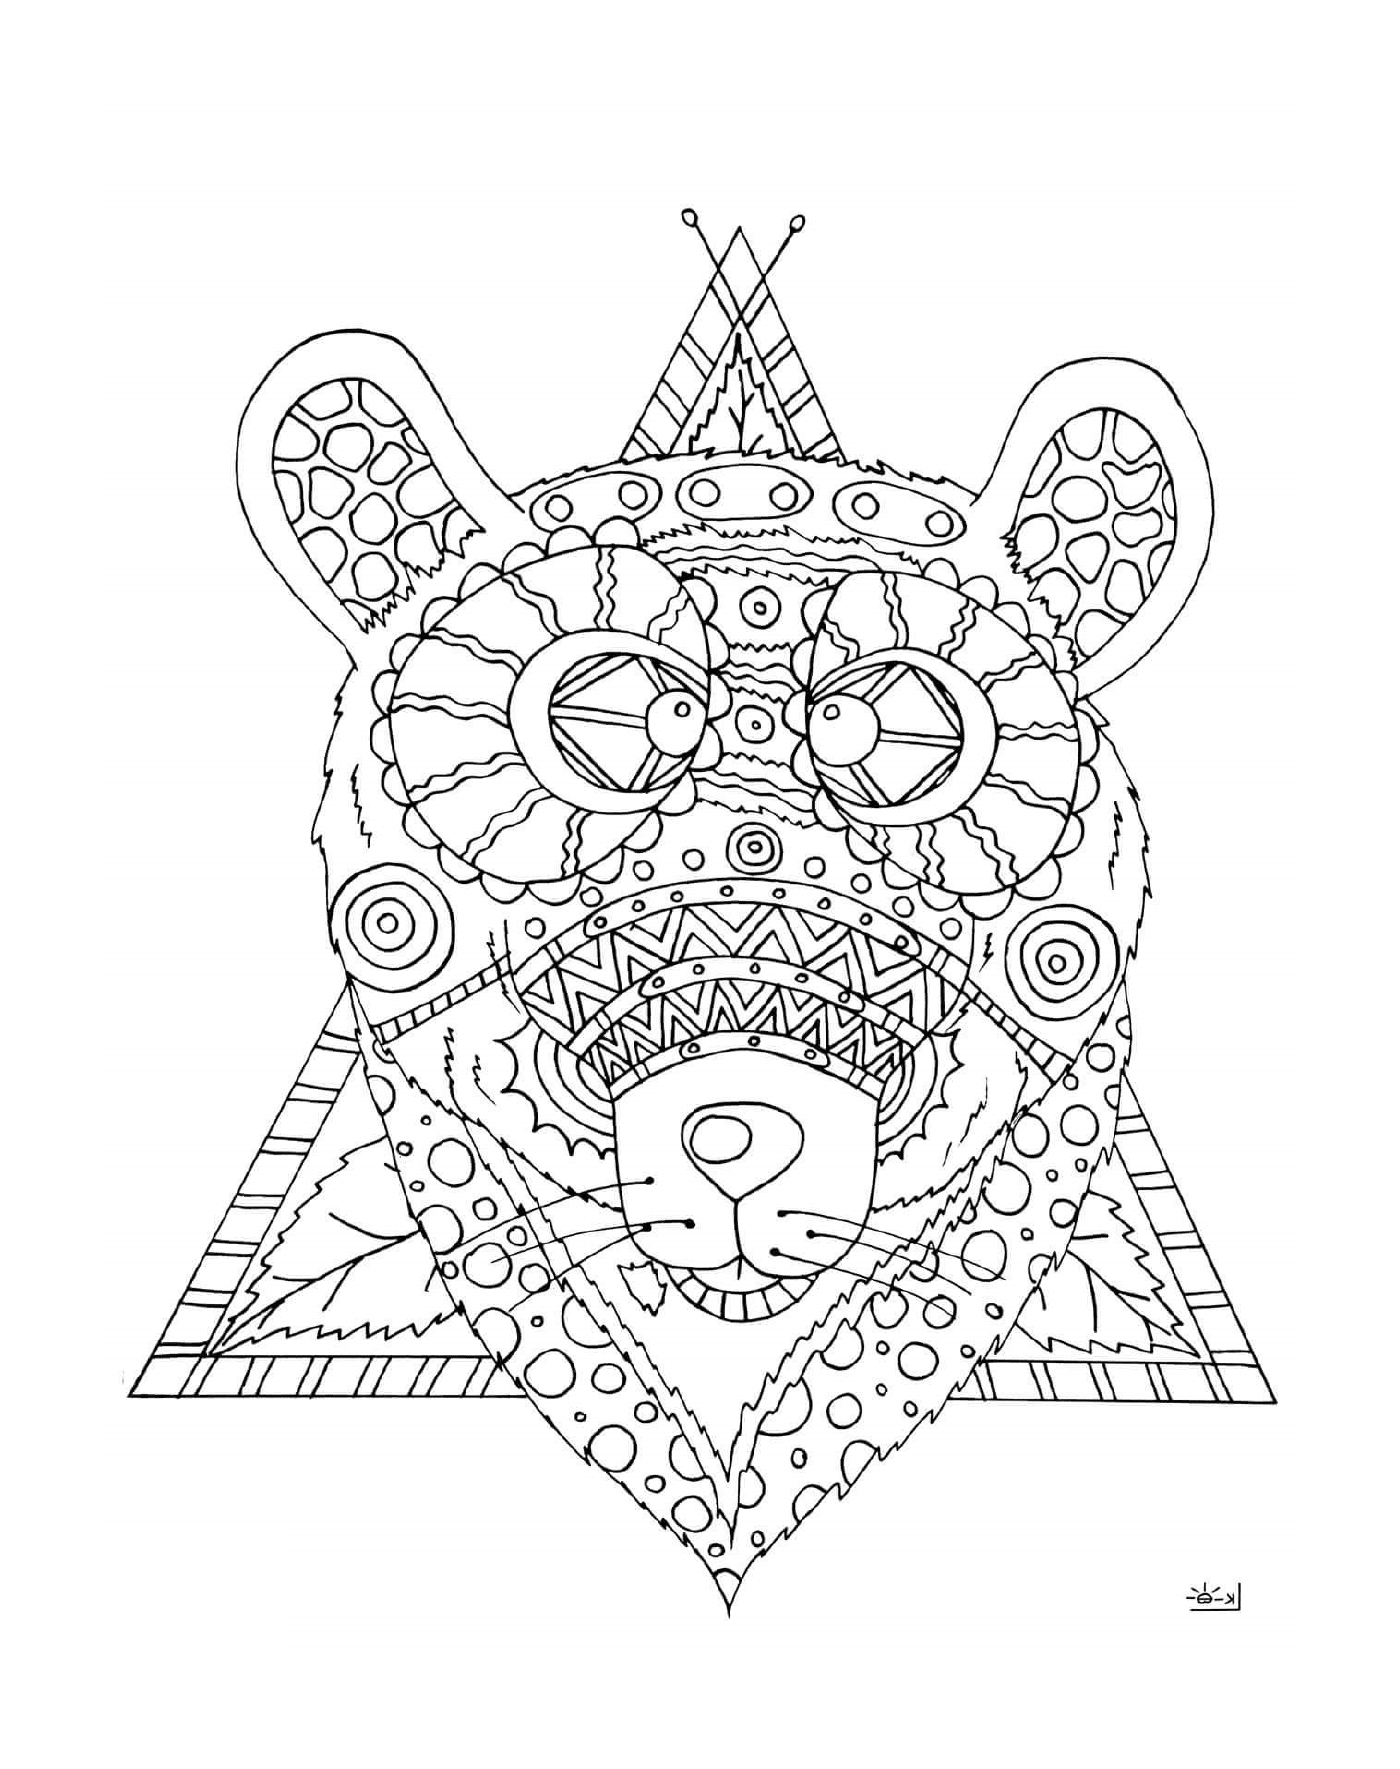  Abstrakte Bären in einem Dreieck 